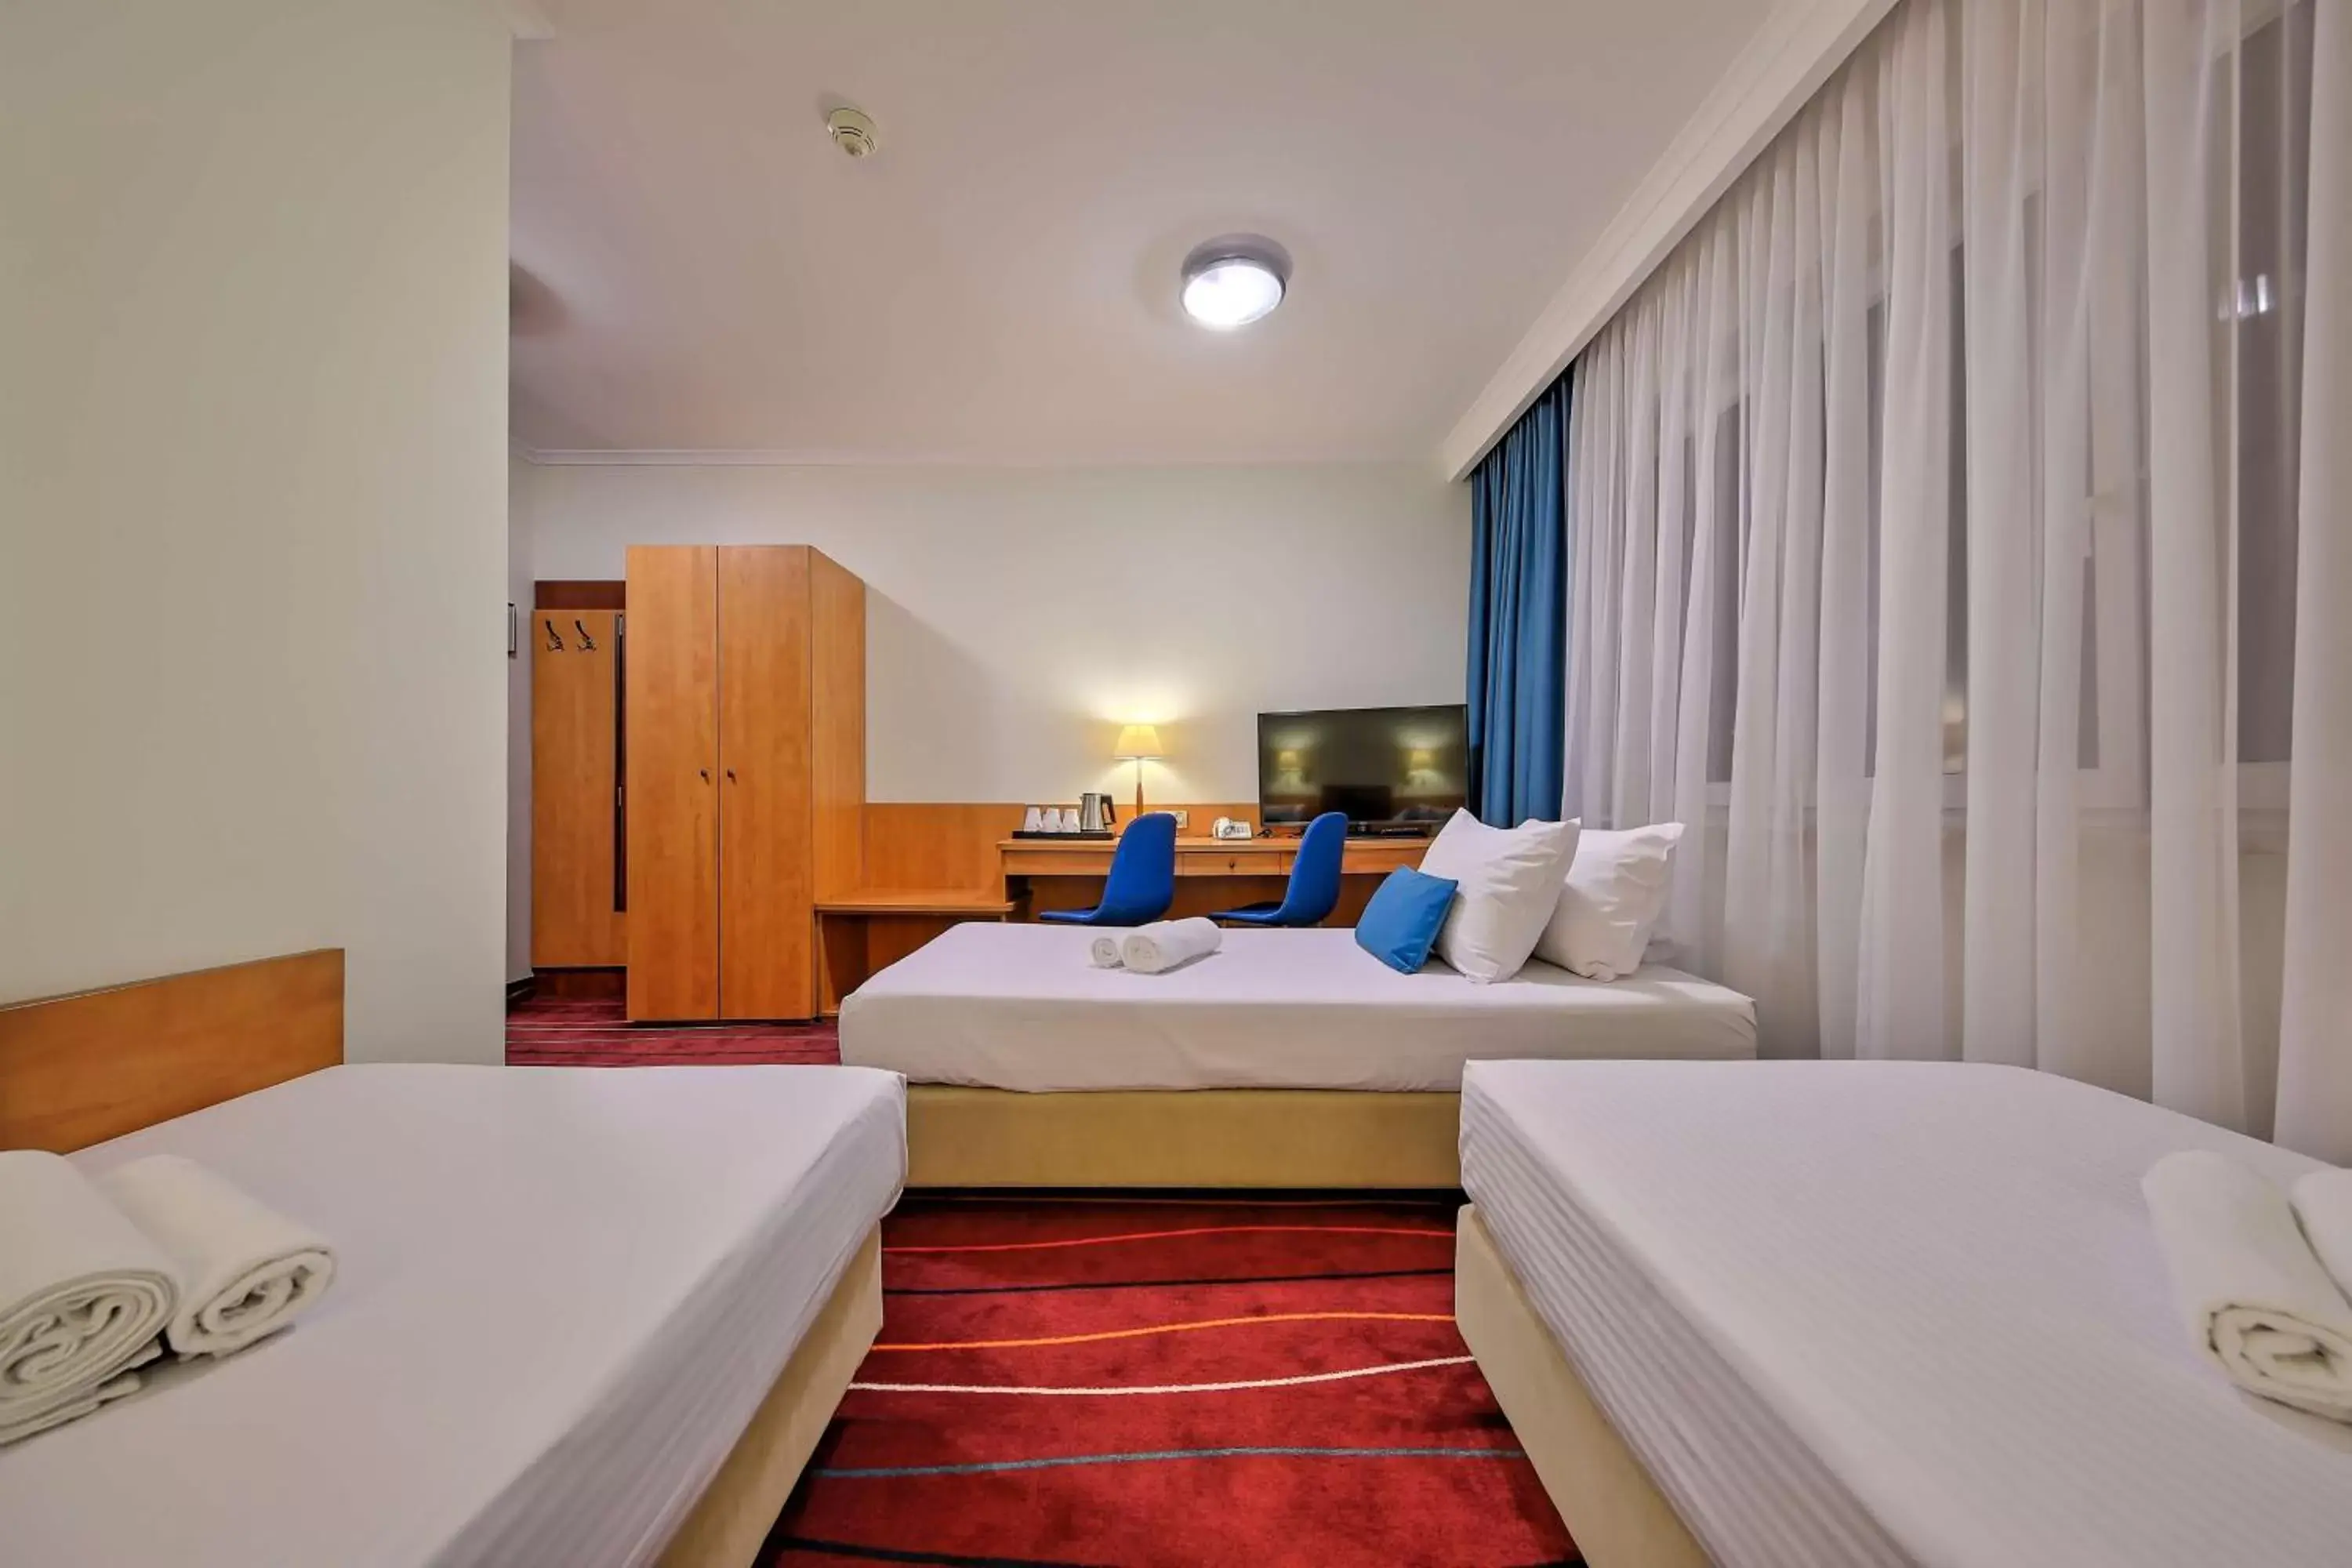 Bedroom, Bed in Best Western Hotel Portos